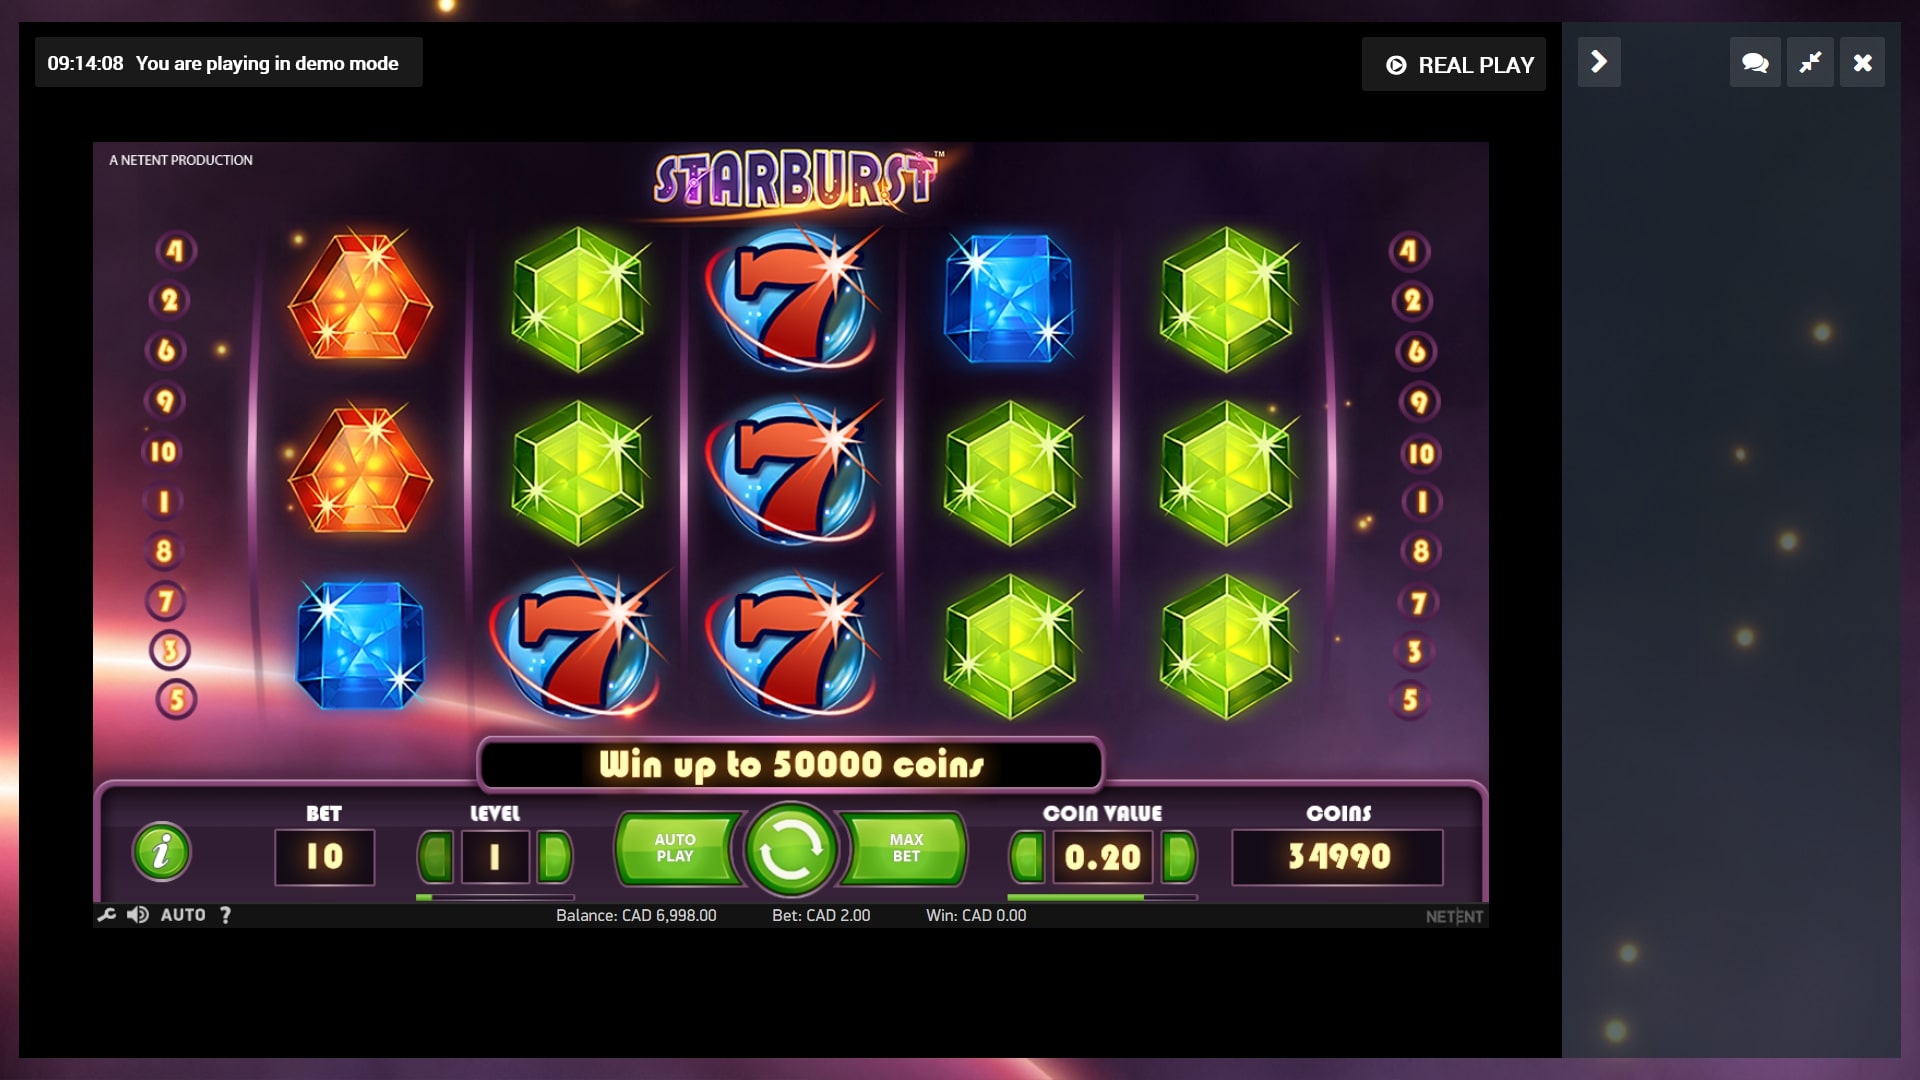 21BetShop Casino Slot Games